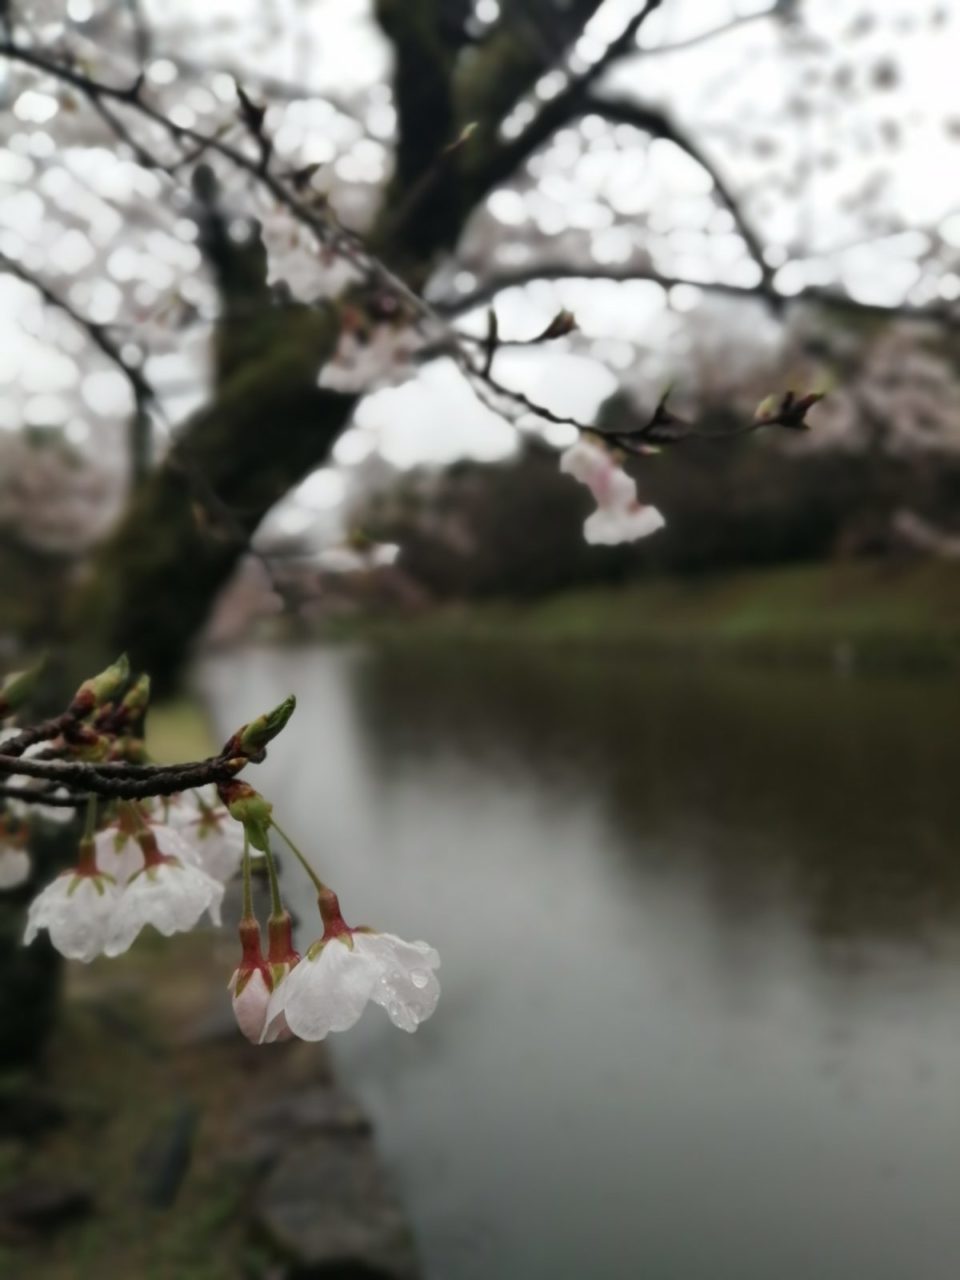 桜とお堀